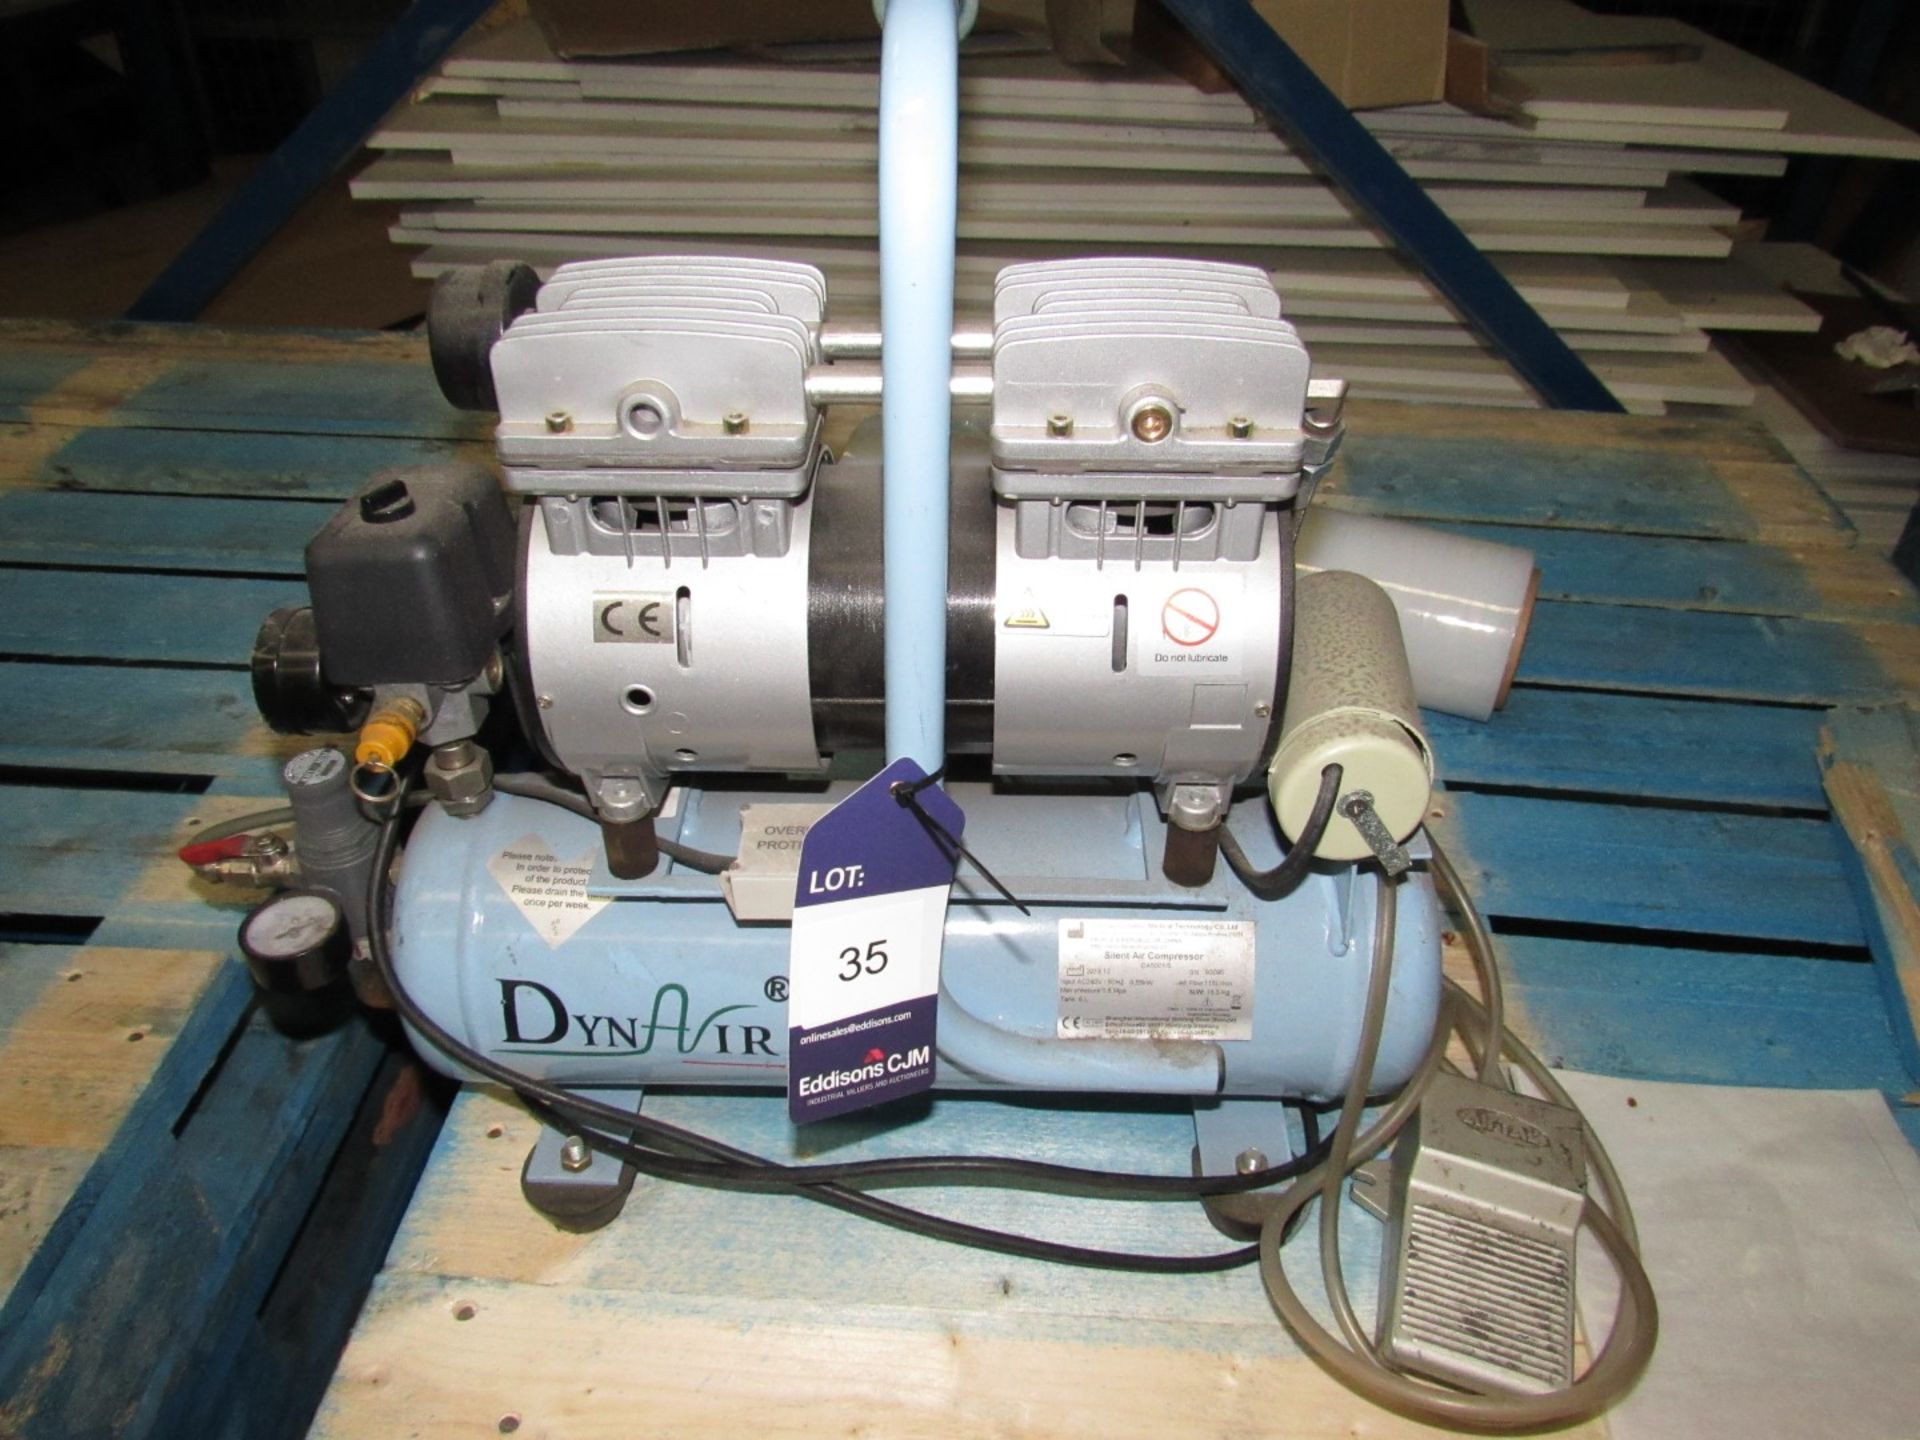 DynAir small silent compressor